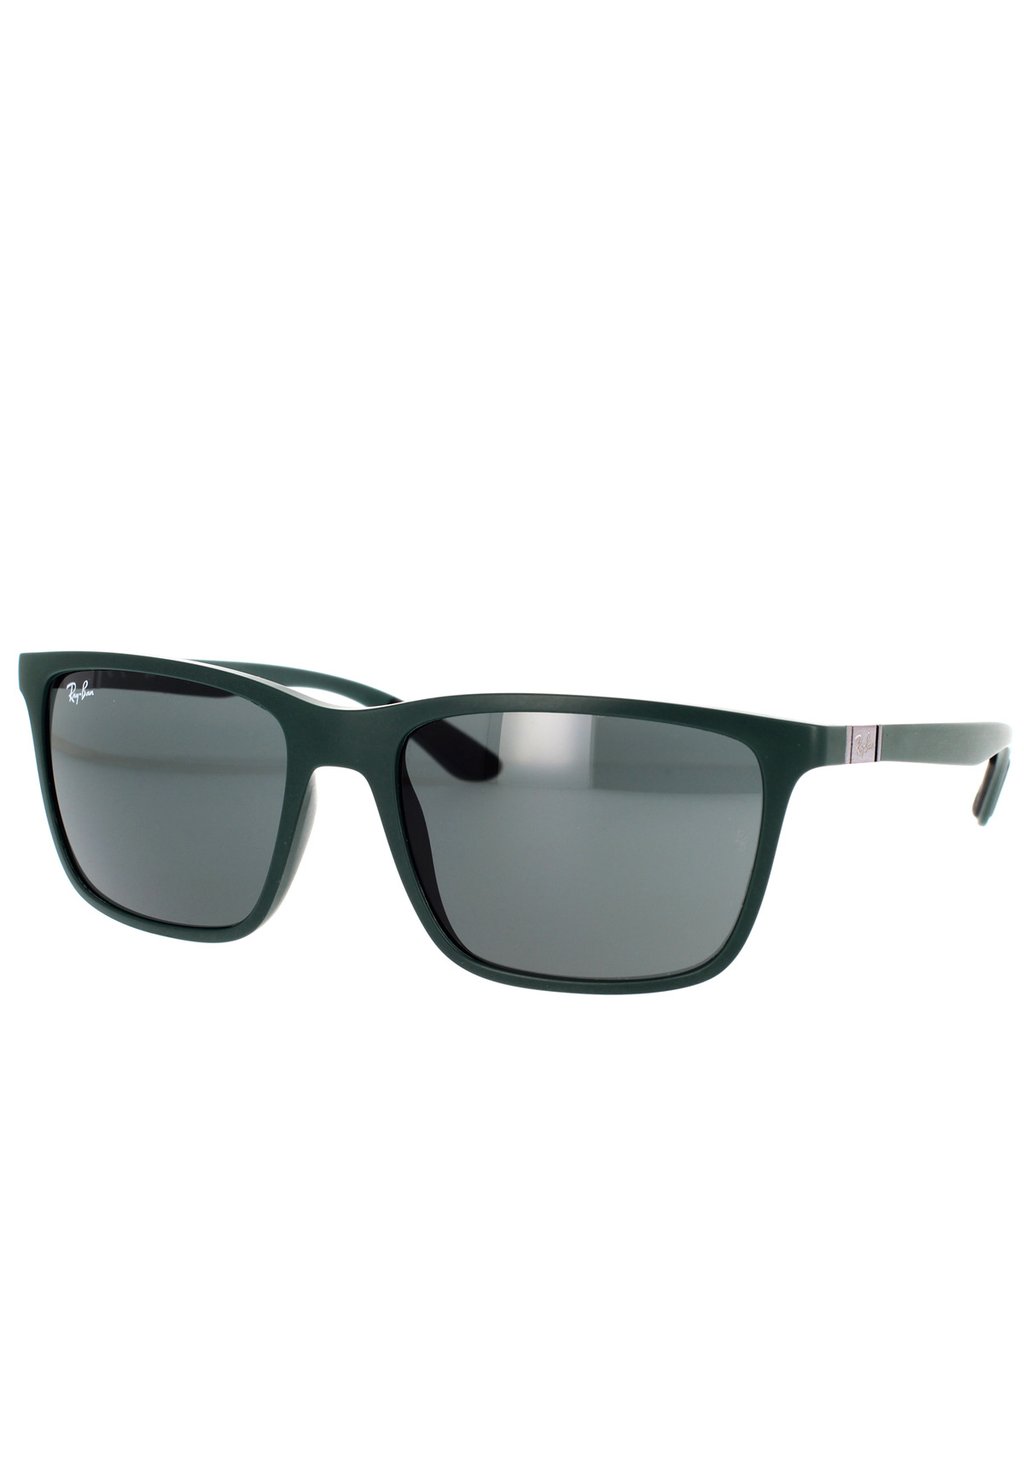 Солнцезащитные очки Ray-Ban, зеленые